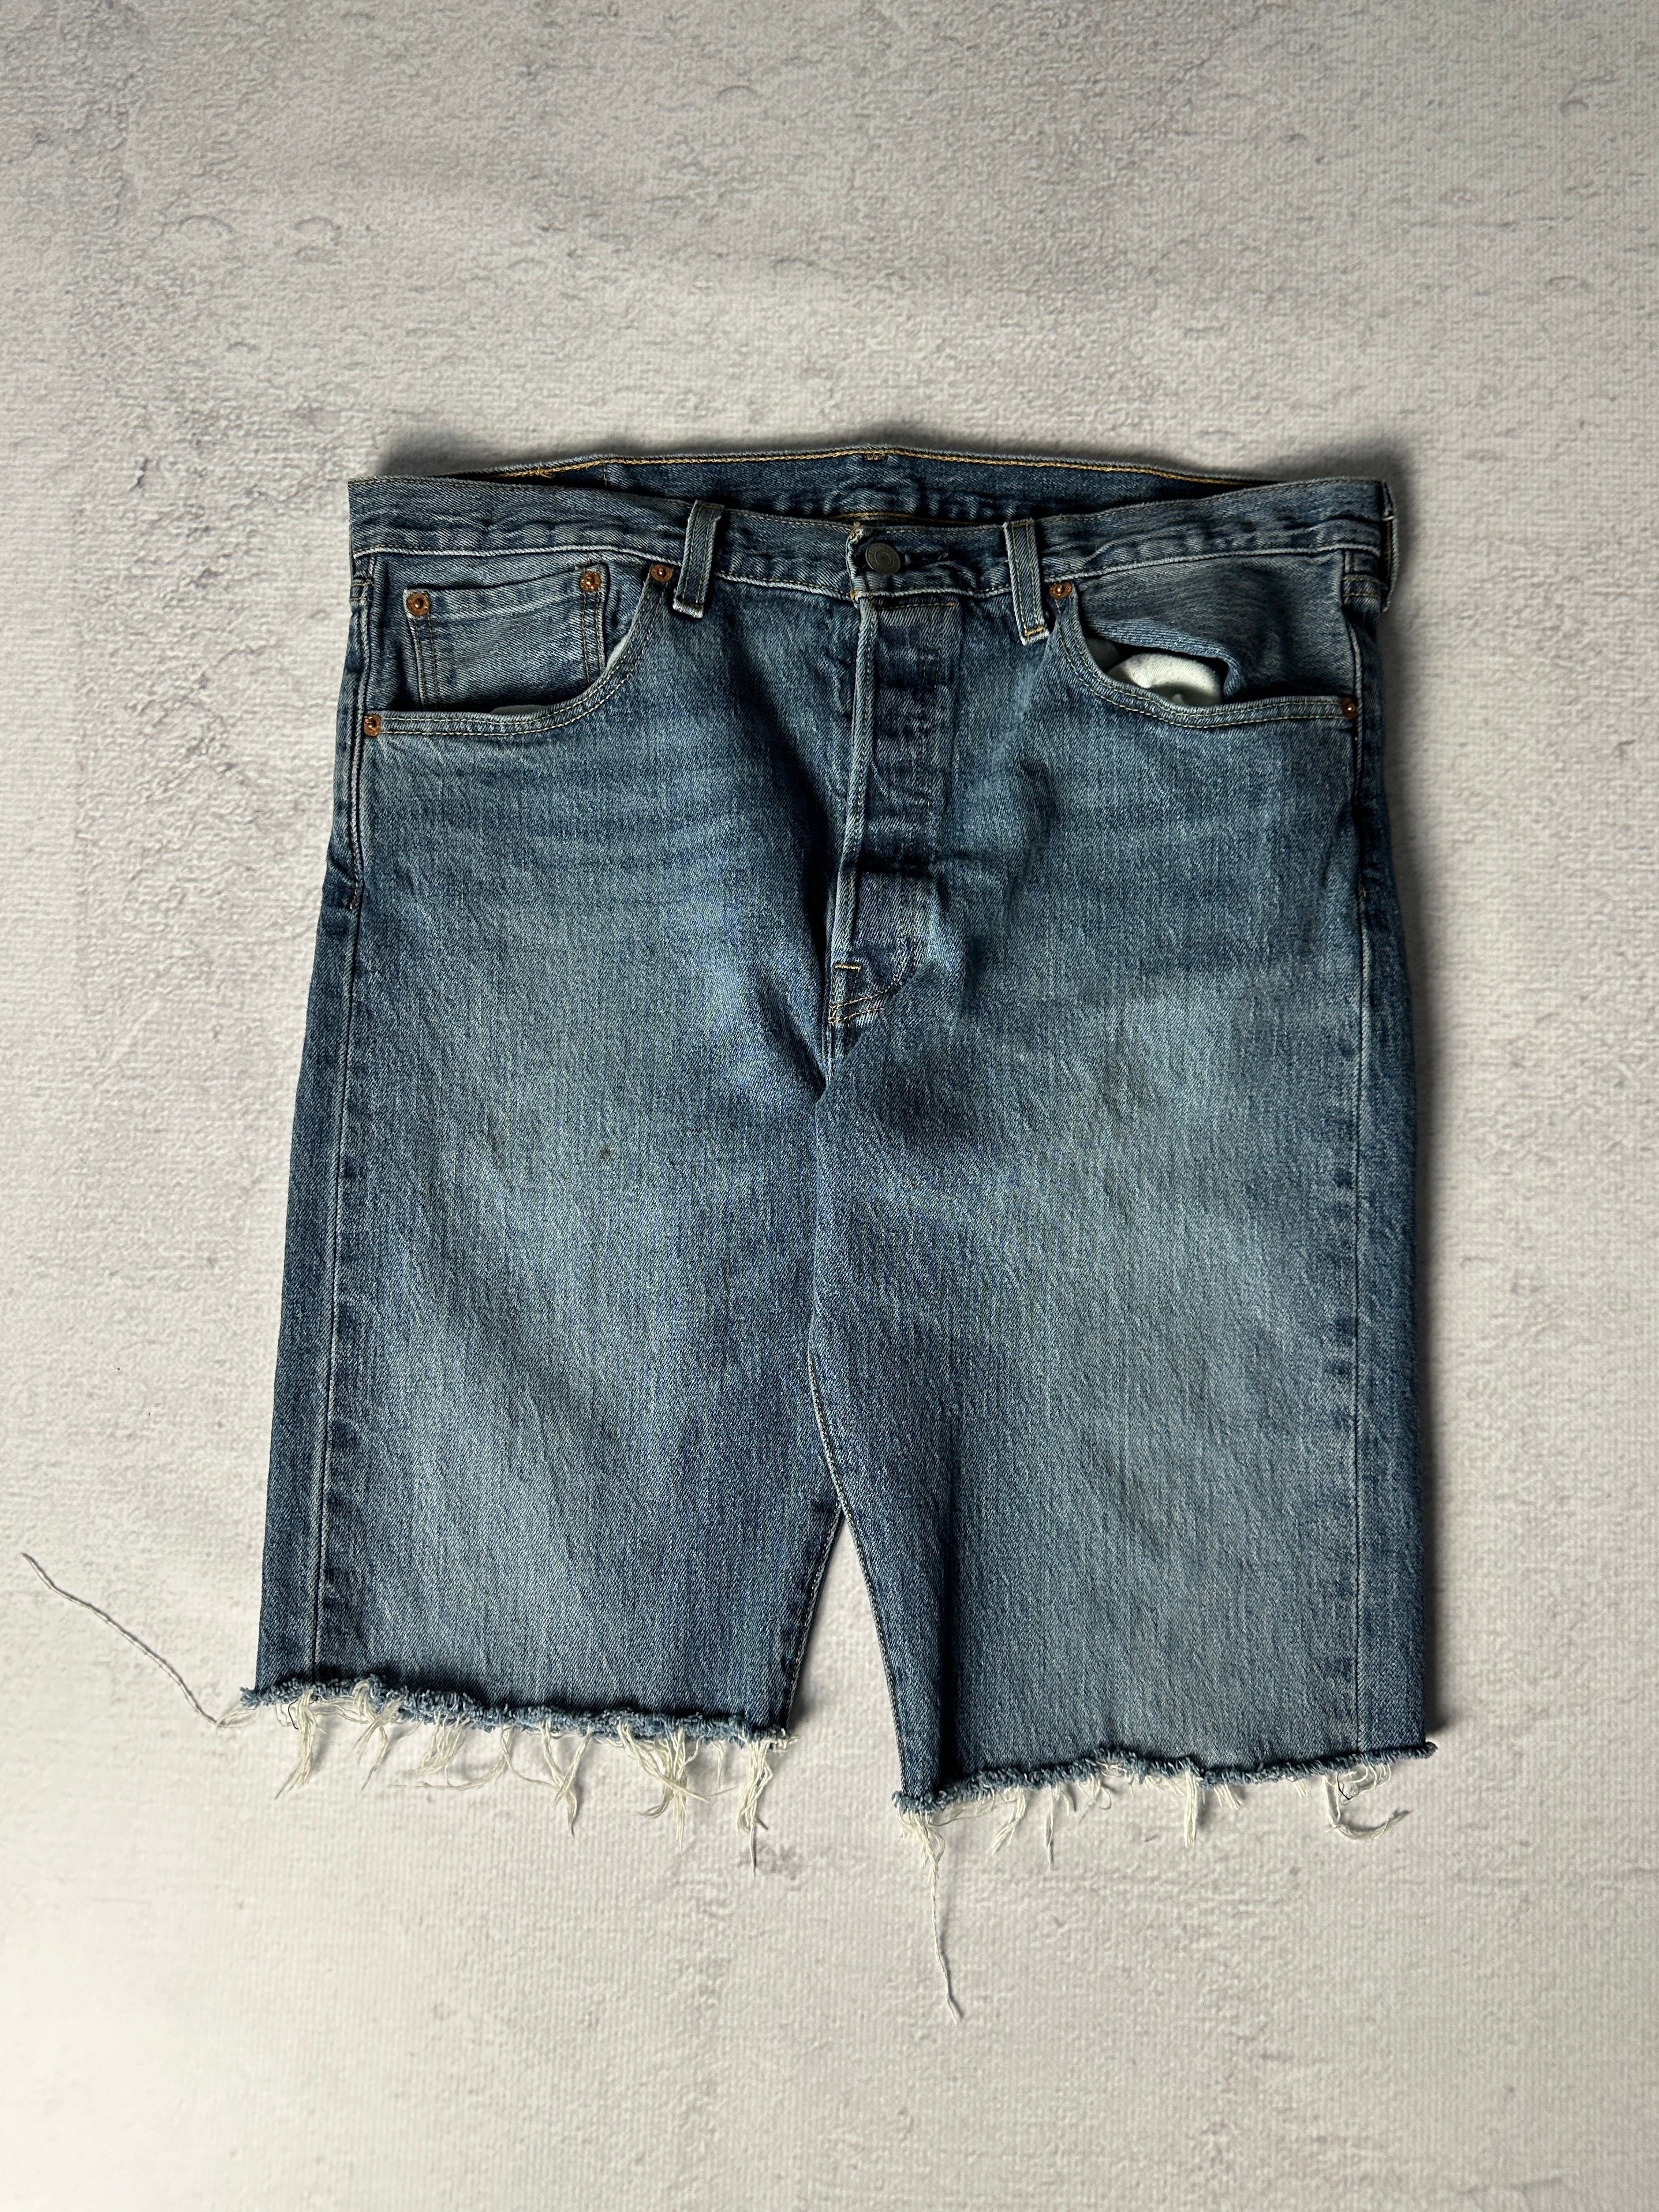 Vintage Levis Jean Shorts - Men's 36W12L